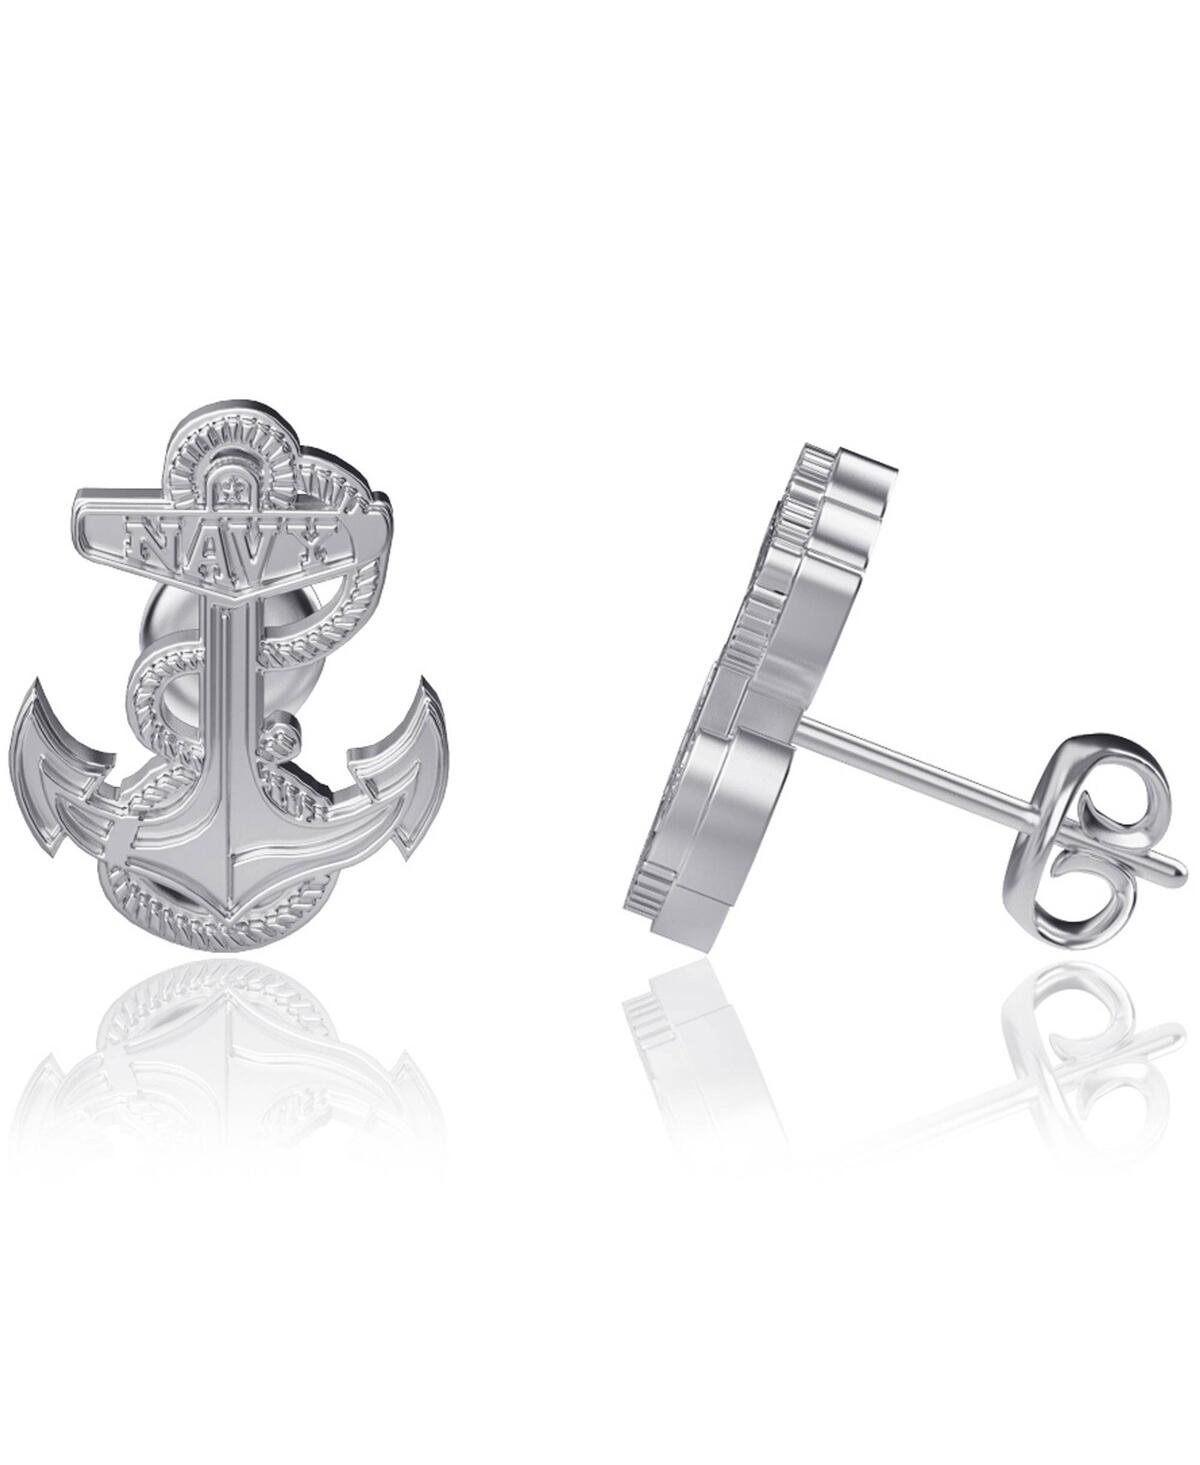 Women's Dayna Designs Navy Midshipmen Silver Post Earrings - Silver-Tone